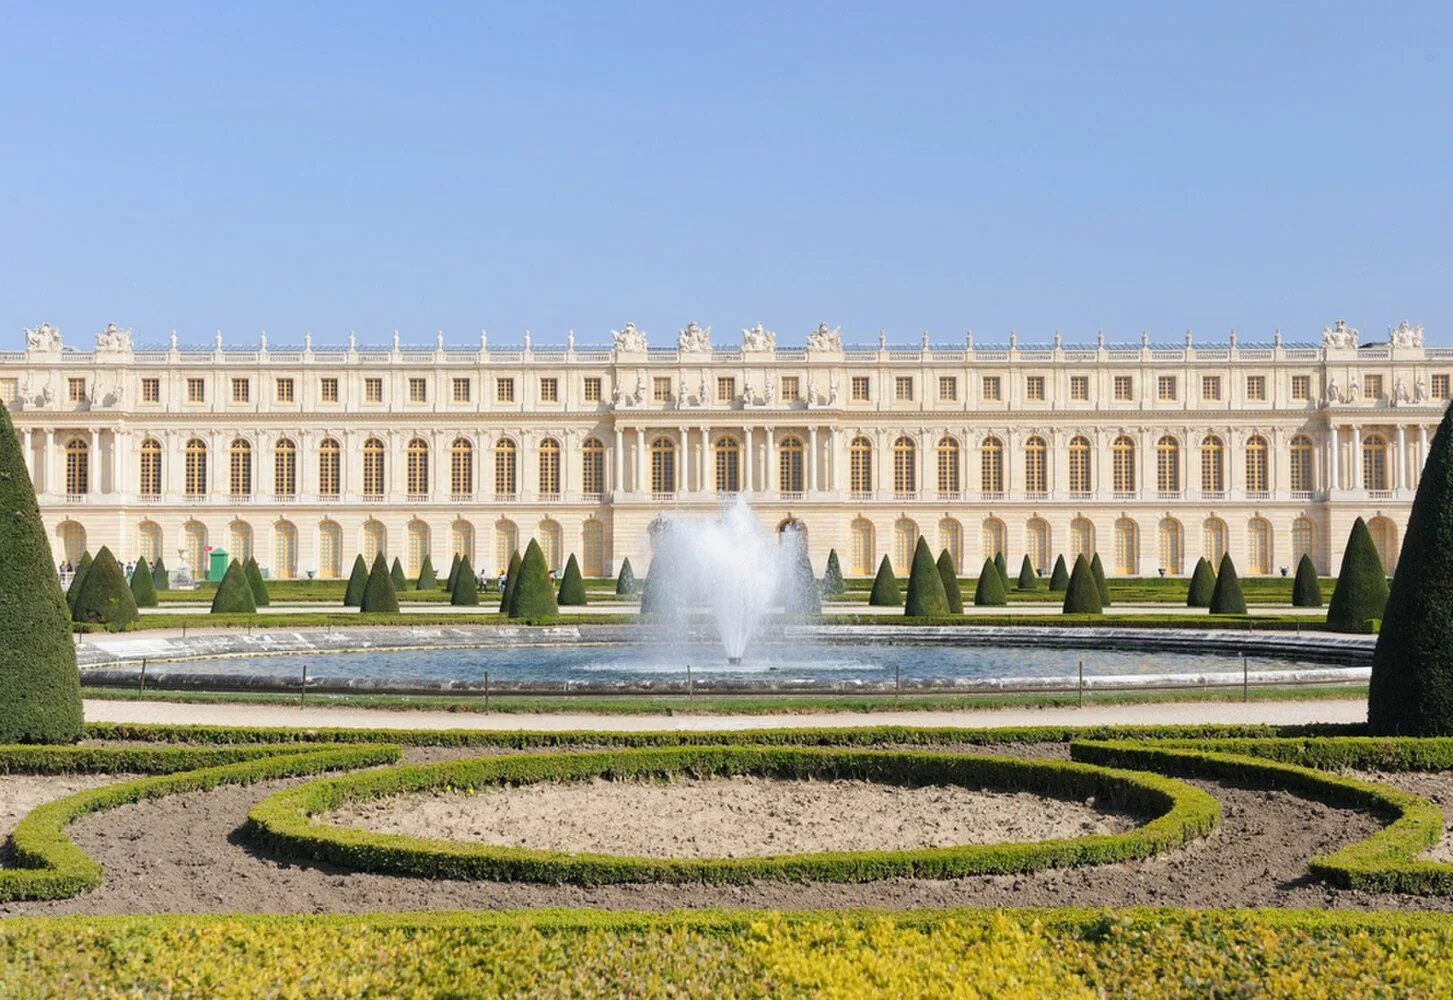 Про версаль. Версальский дворец. Версаль. Версальский дворцово-парковый комплекс, Франция. Королевский дворец в Версале. Дворец и парк в Версале Франция.